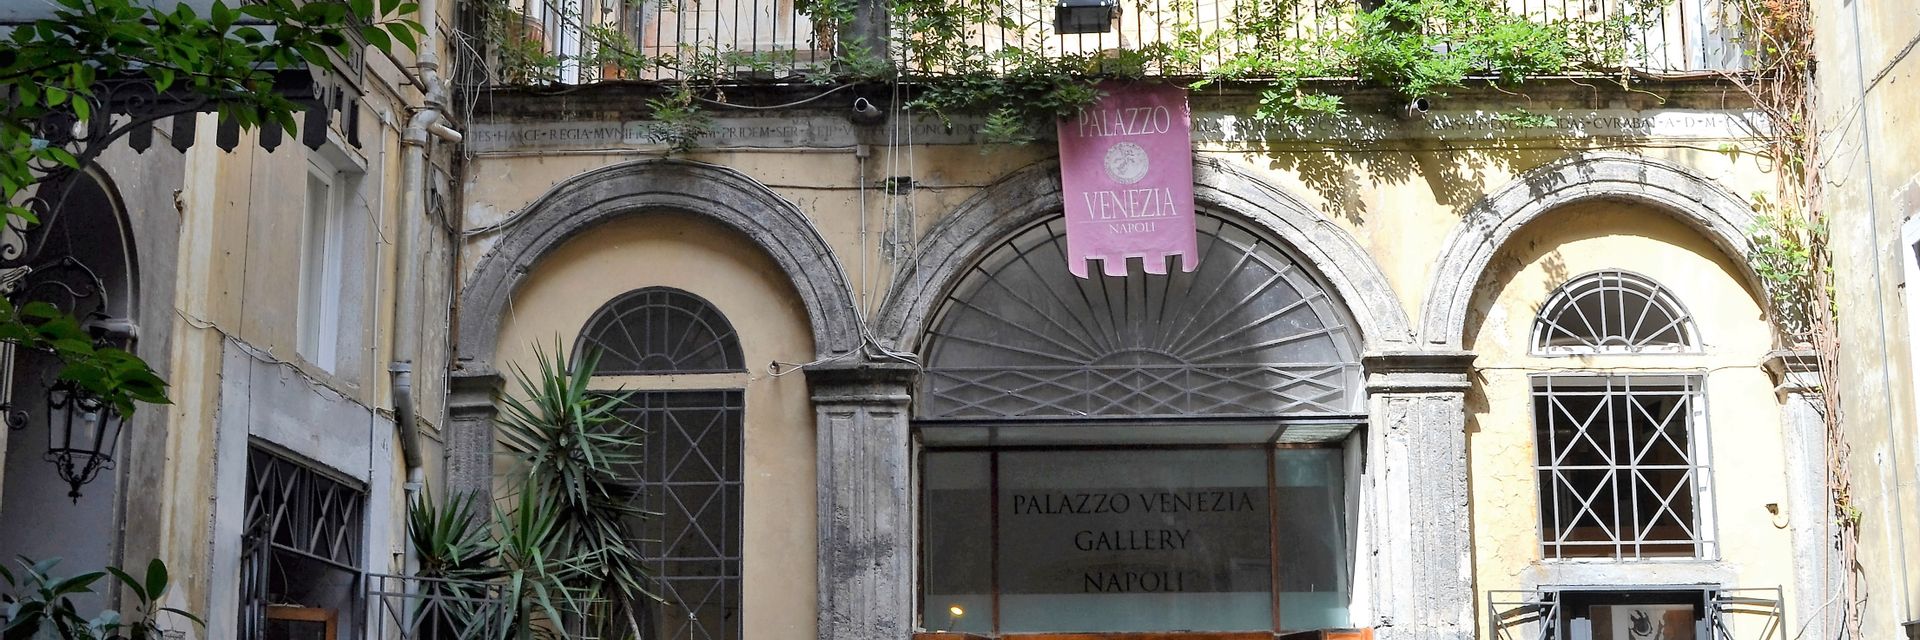 Palazzo Venezia di Napoli